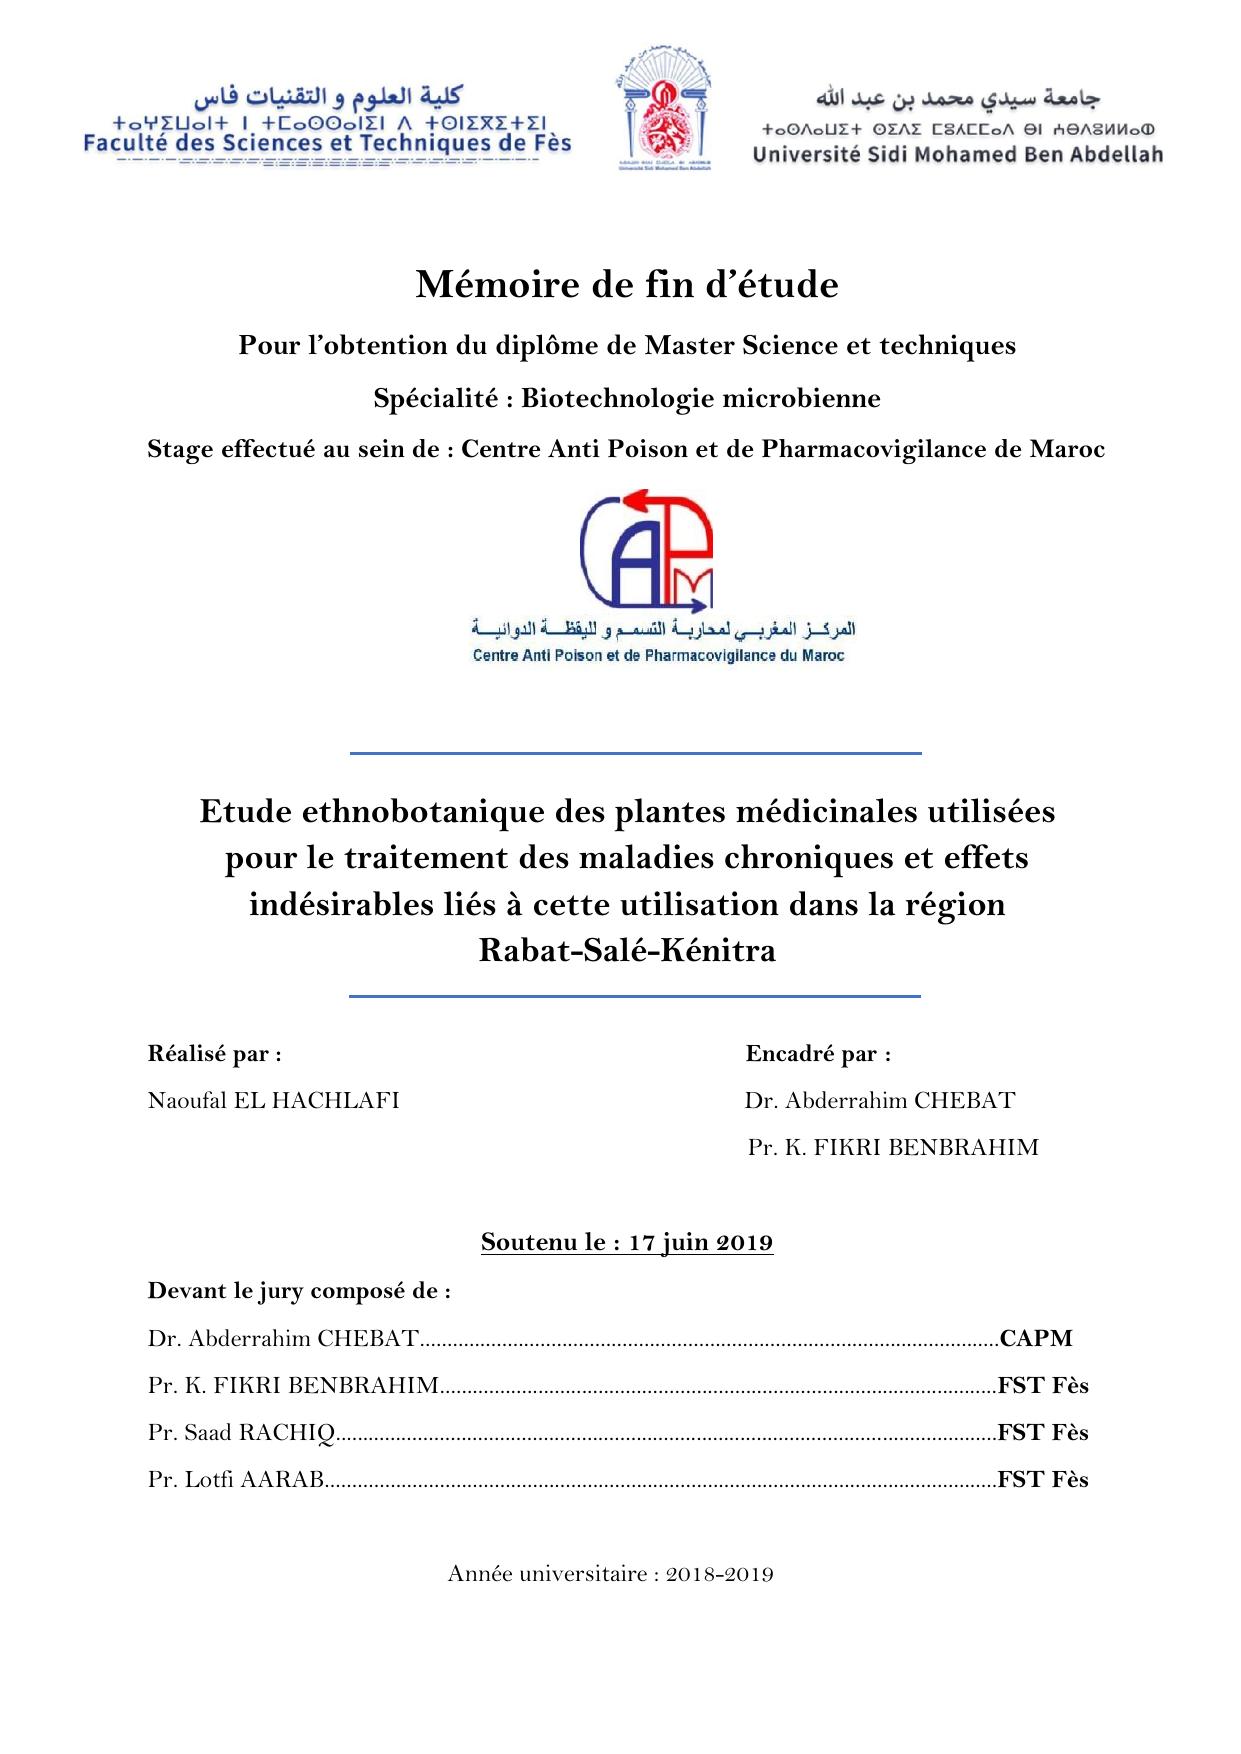 Etude ethnobotanique des plantes médicinales utilisées pour le traitement des maladies chroniques et effets indésirables liés à cette utilisation dans la région Rabat-Salé-Kénitra